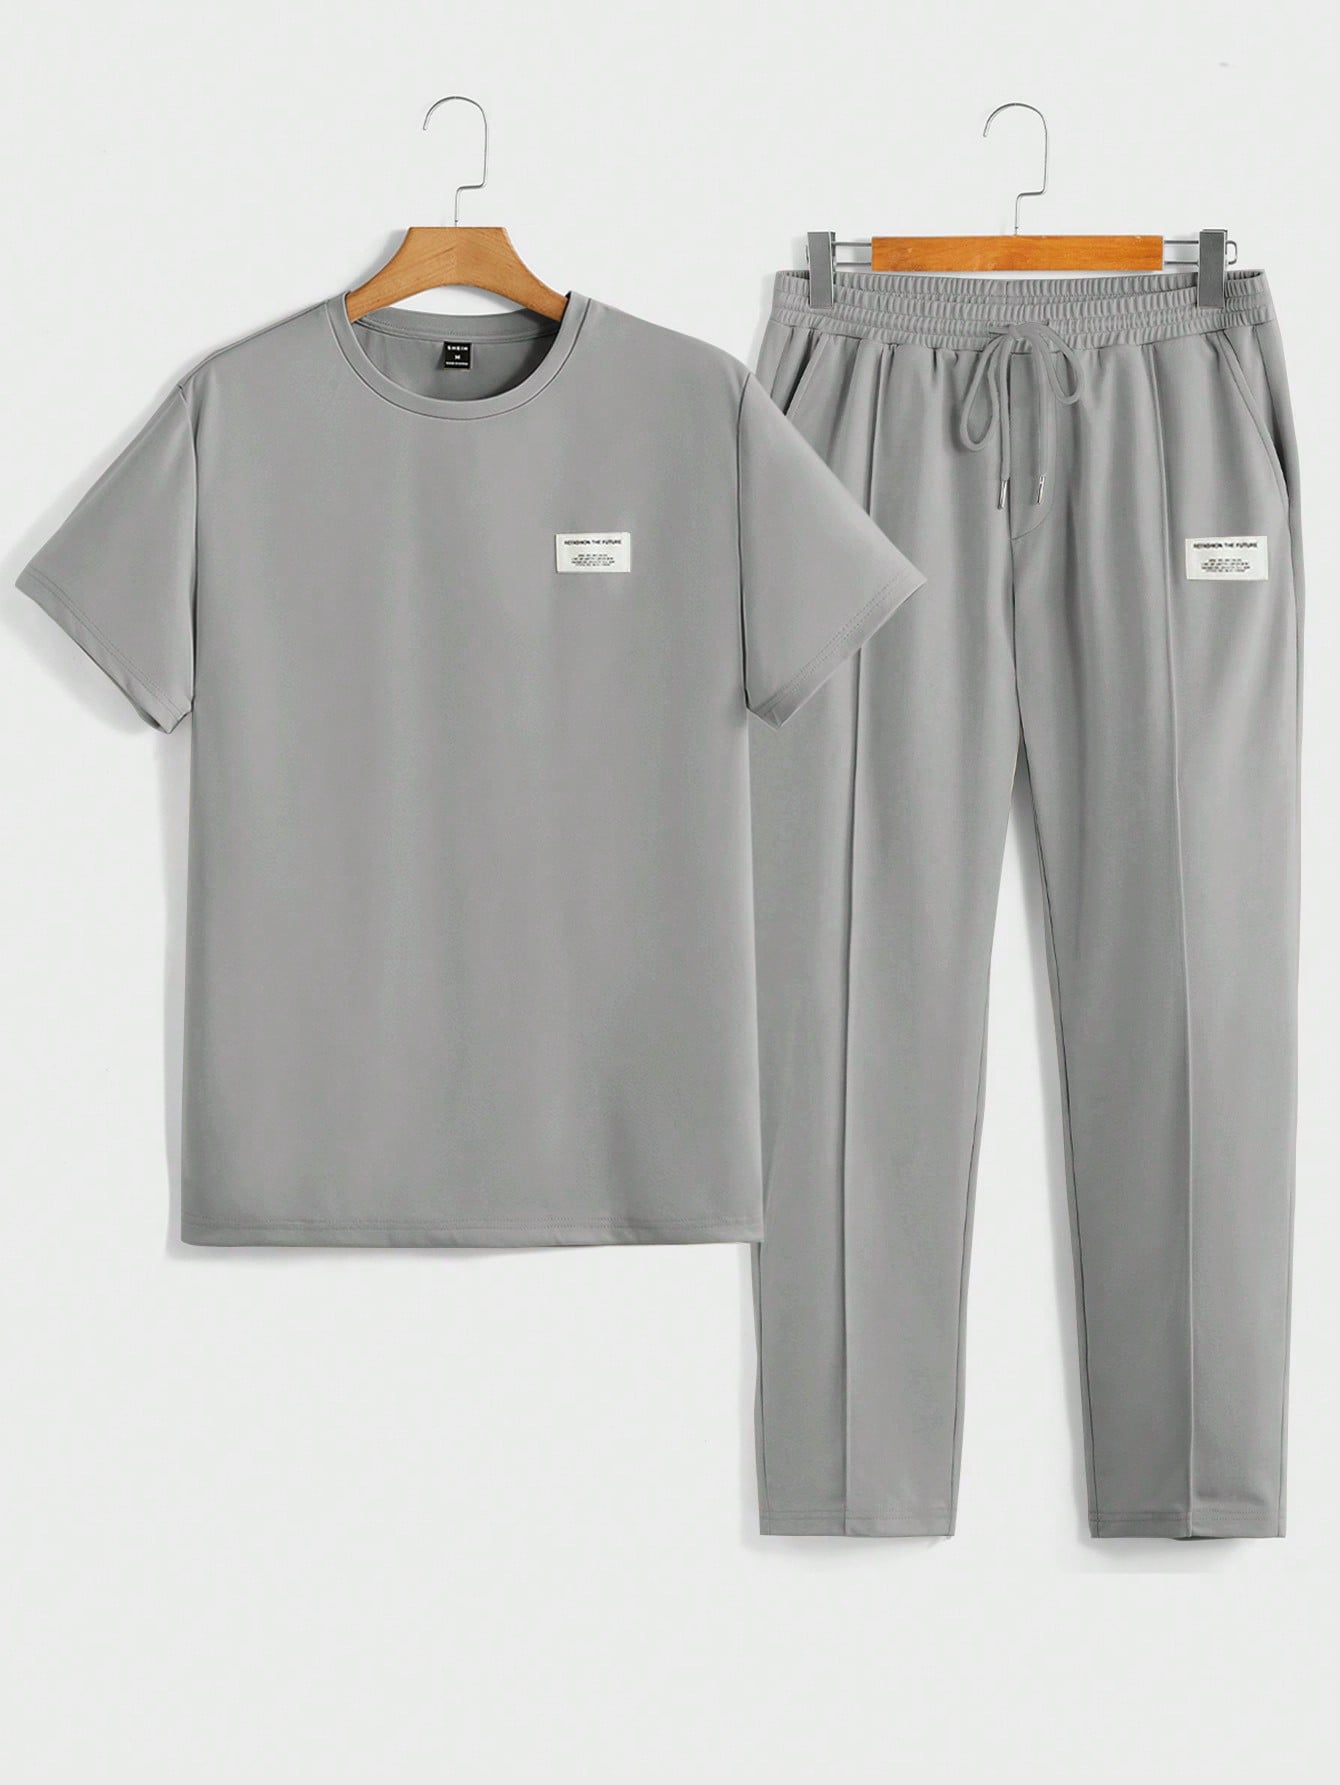 Мужская футболка с короткими рукавами и трикотажными повседневными брюками Manfinity Homme с надписью и нашивкой, серый